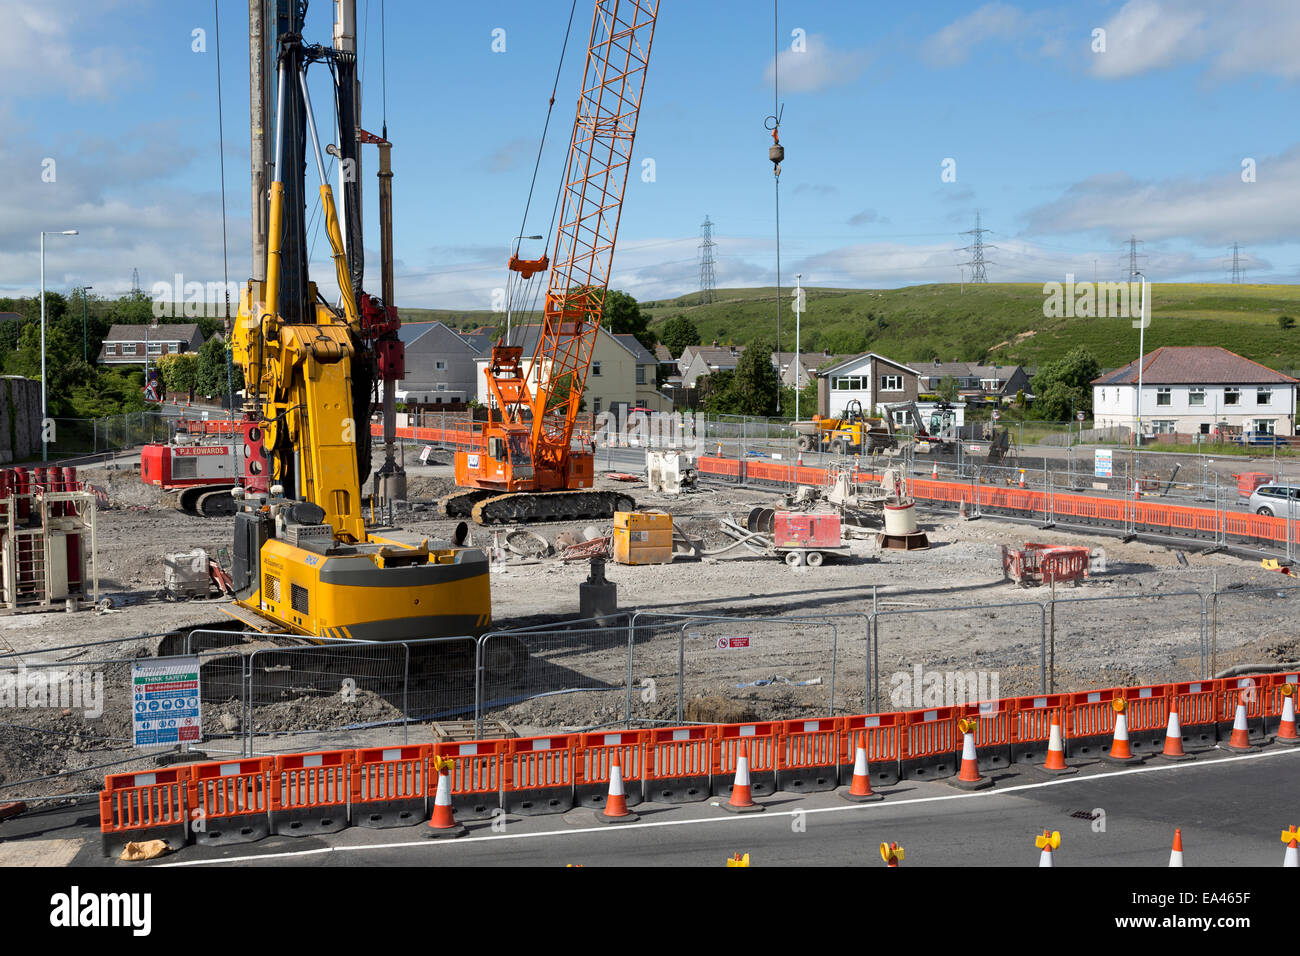 Las obras viales durante la reconstrucción de los jefes de los valles A465 Carretera con rotonda temporales, Trefil, Wales, REINO UNIDO Foto de stock